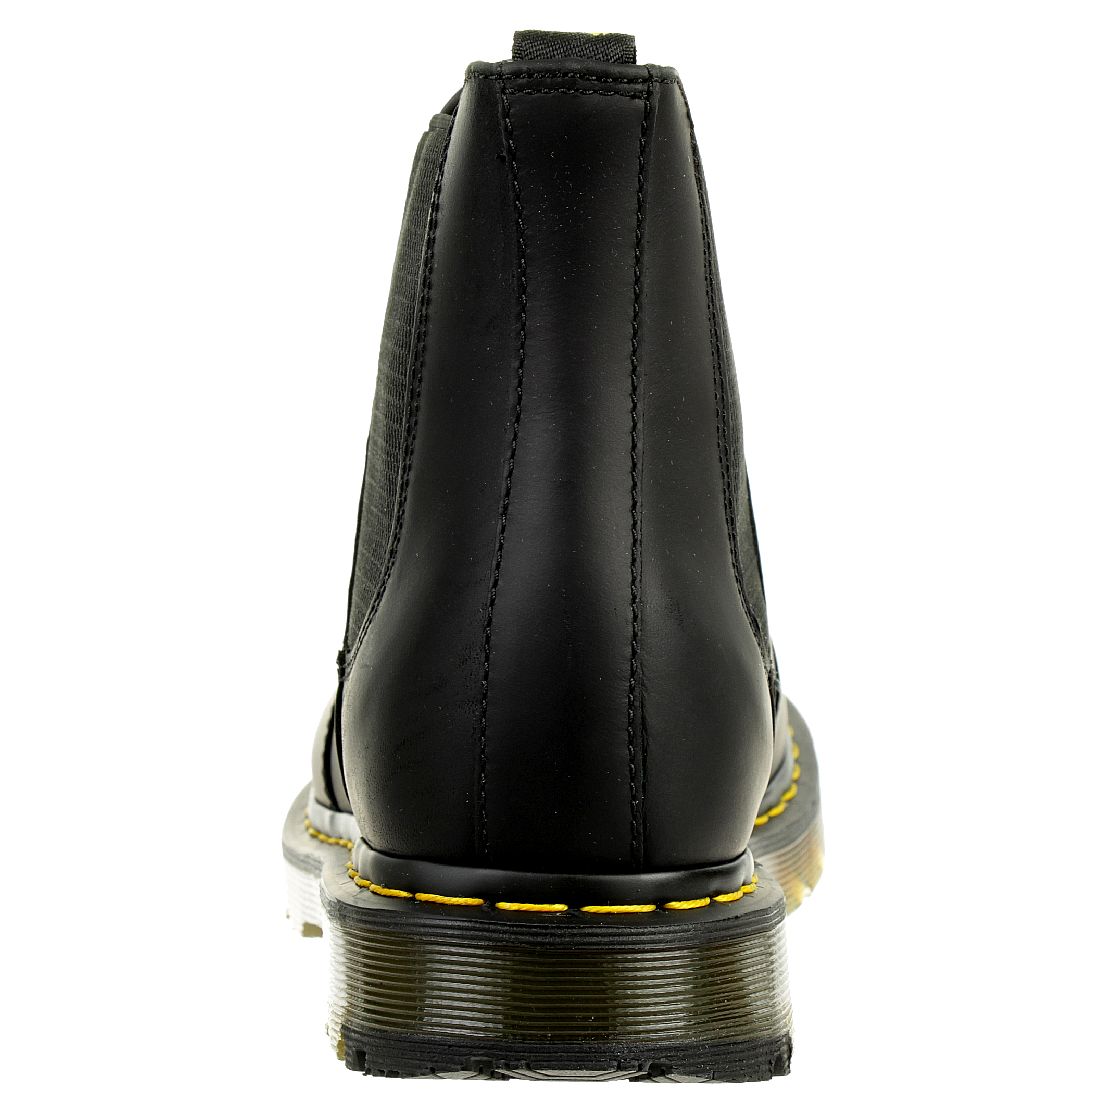 Dr. Martens Herren Snowplow WP Black 2976 Chelsea Boots Leather schwarz 24040001